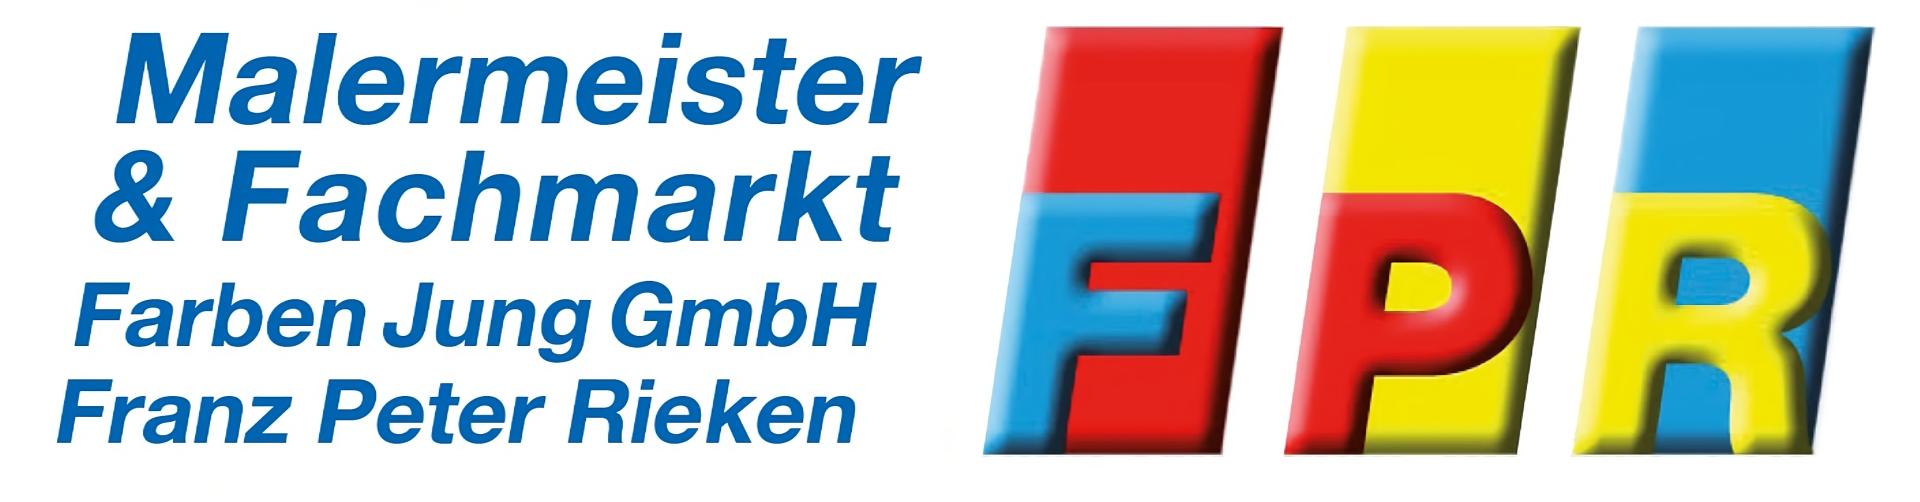 Logo Farben Jung GmbH - Malermeister Franz Peter Rieken - Bergheim Köln-Aachener Straße 118 - 1920x402